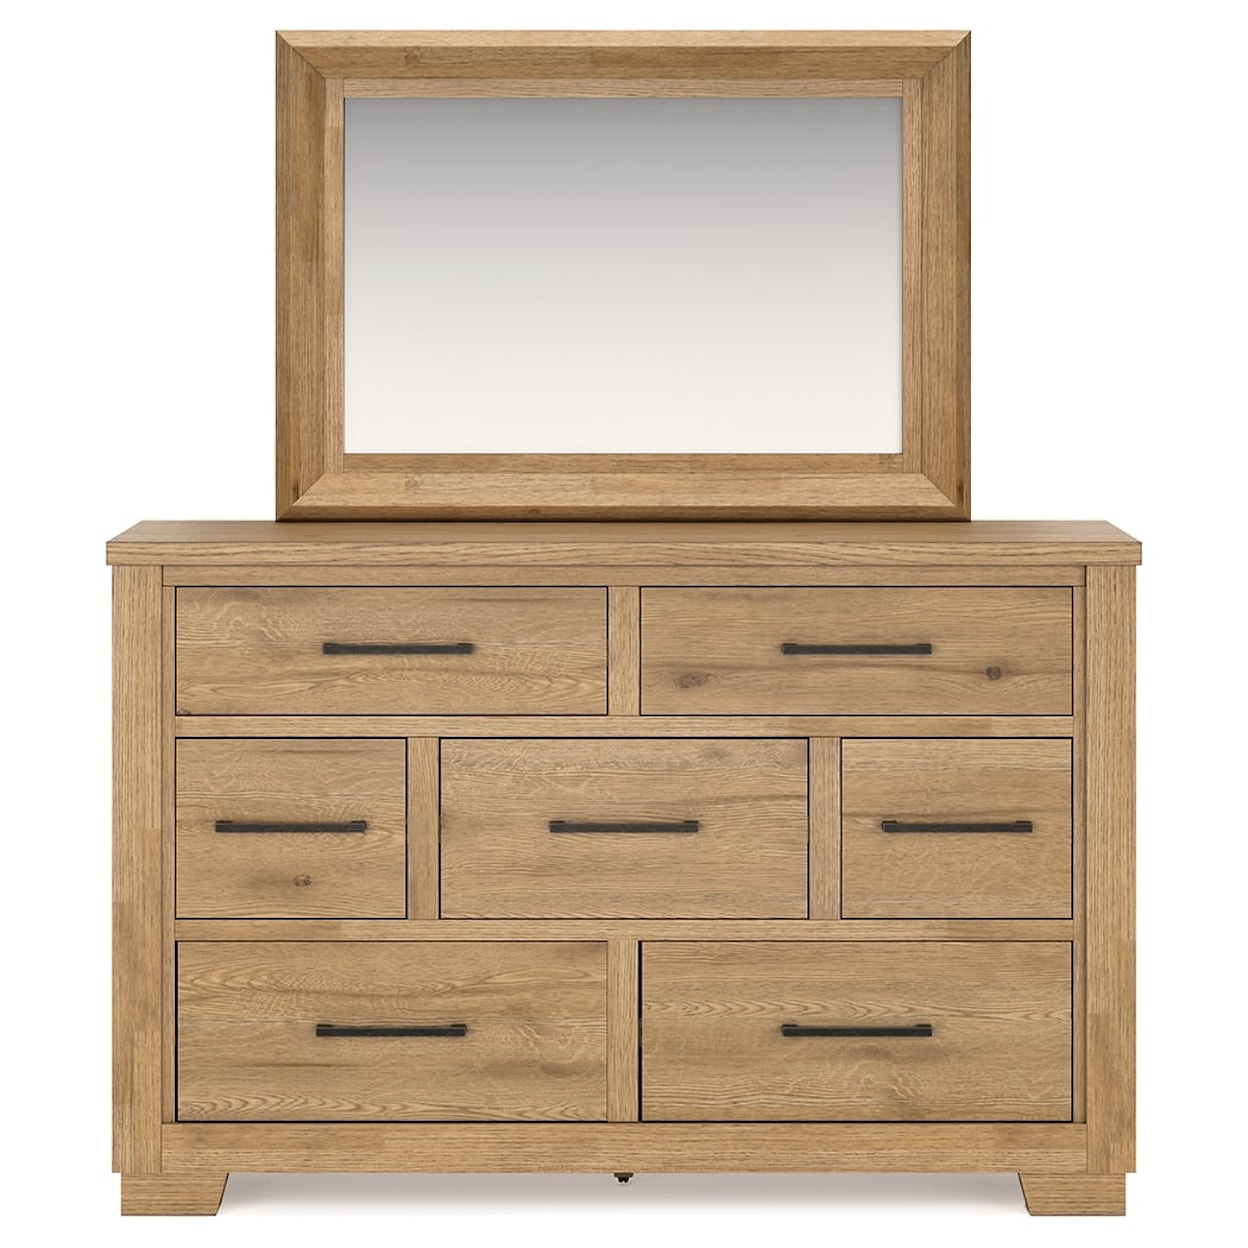 Ashley Furniture Signature Design Galliden Dresser and Mirror